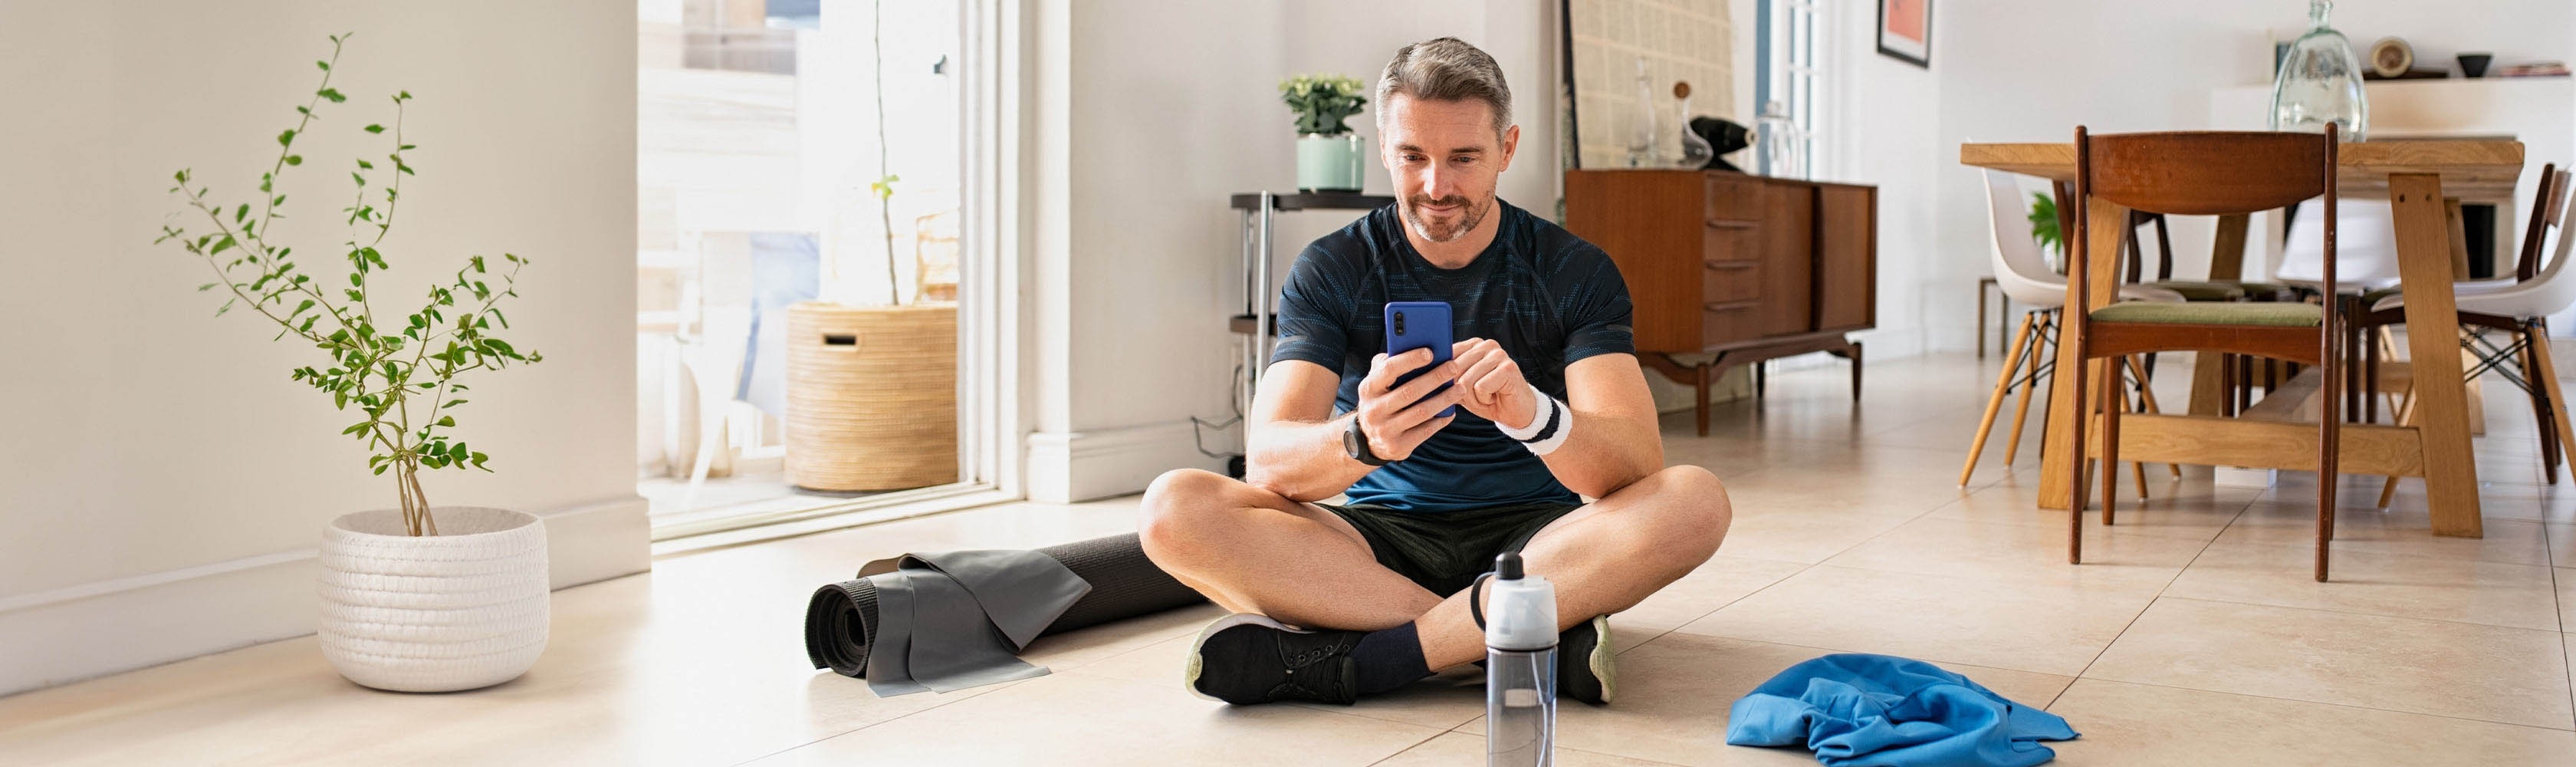 Sportlicher Mann benutzt eine Fitness App auf dem Boden sitzend.